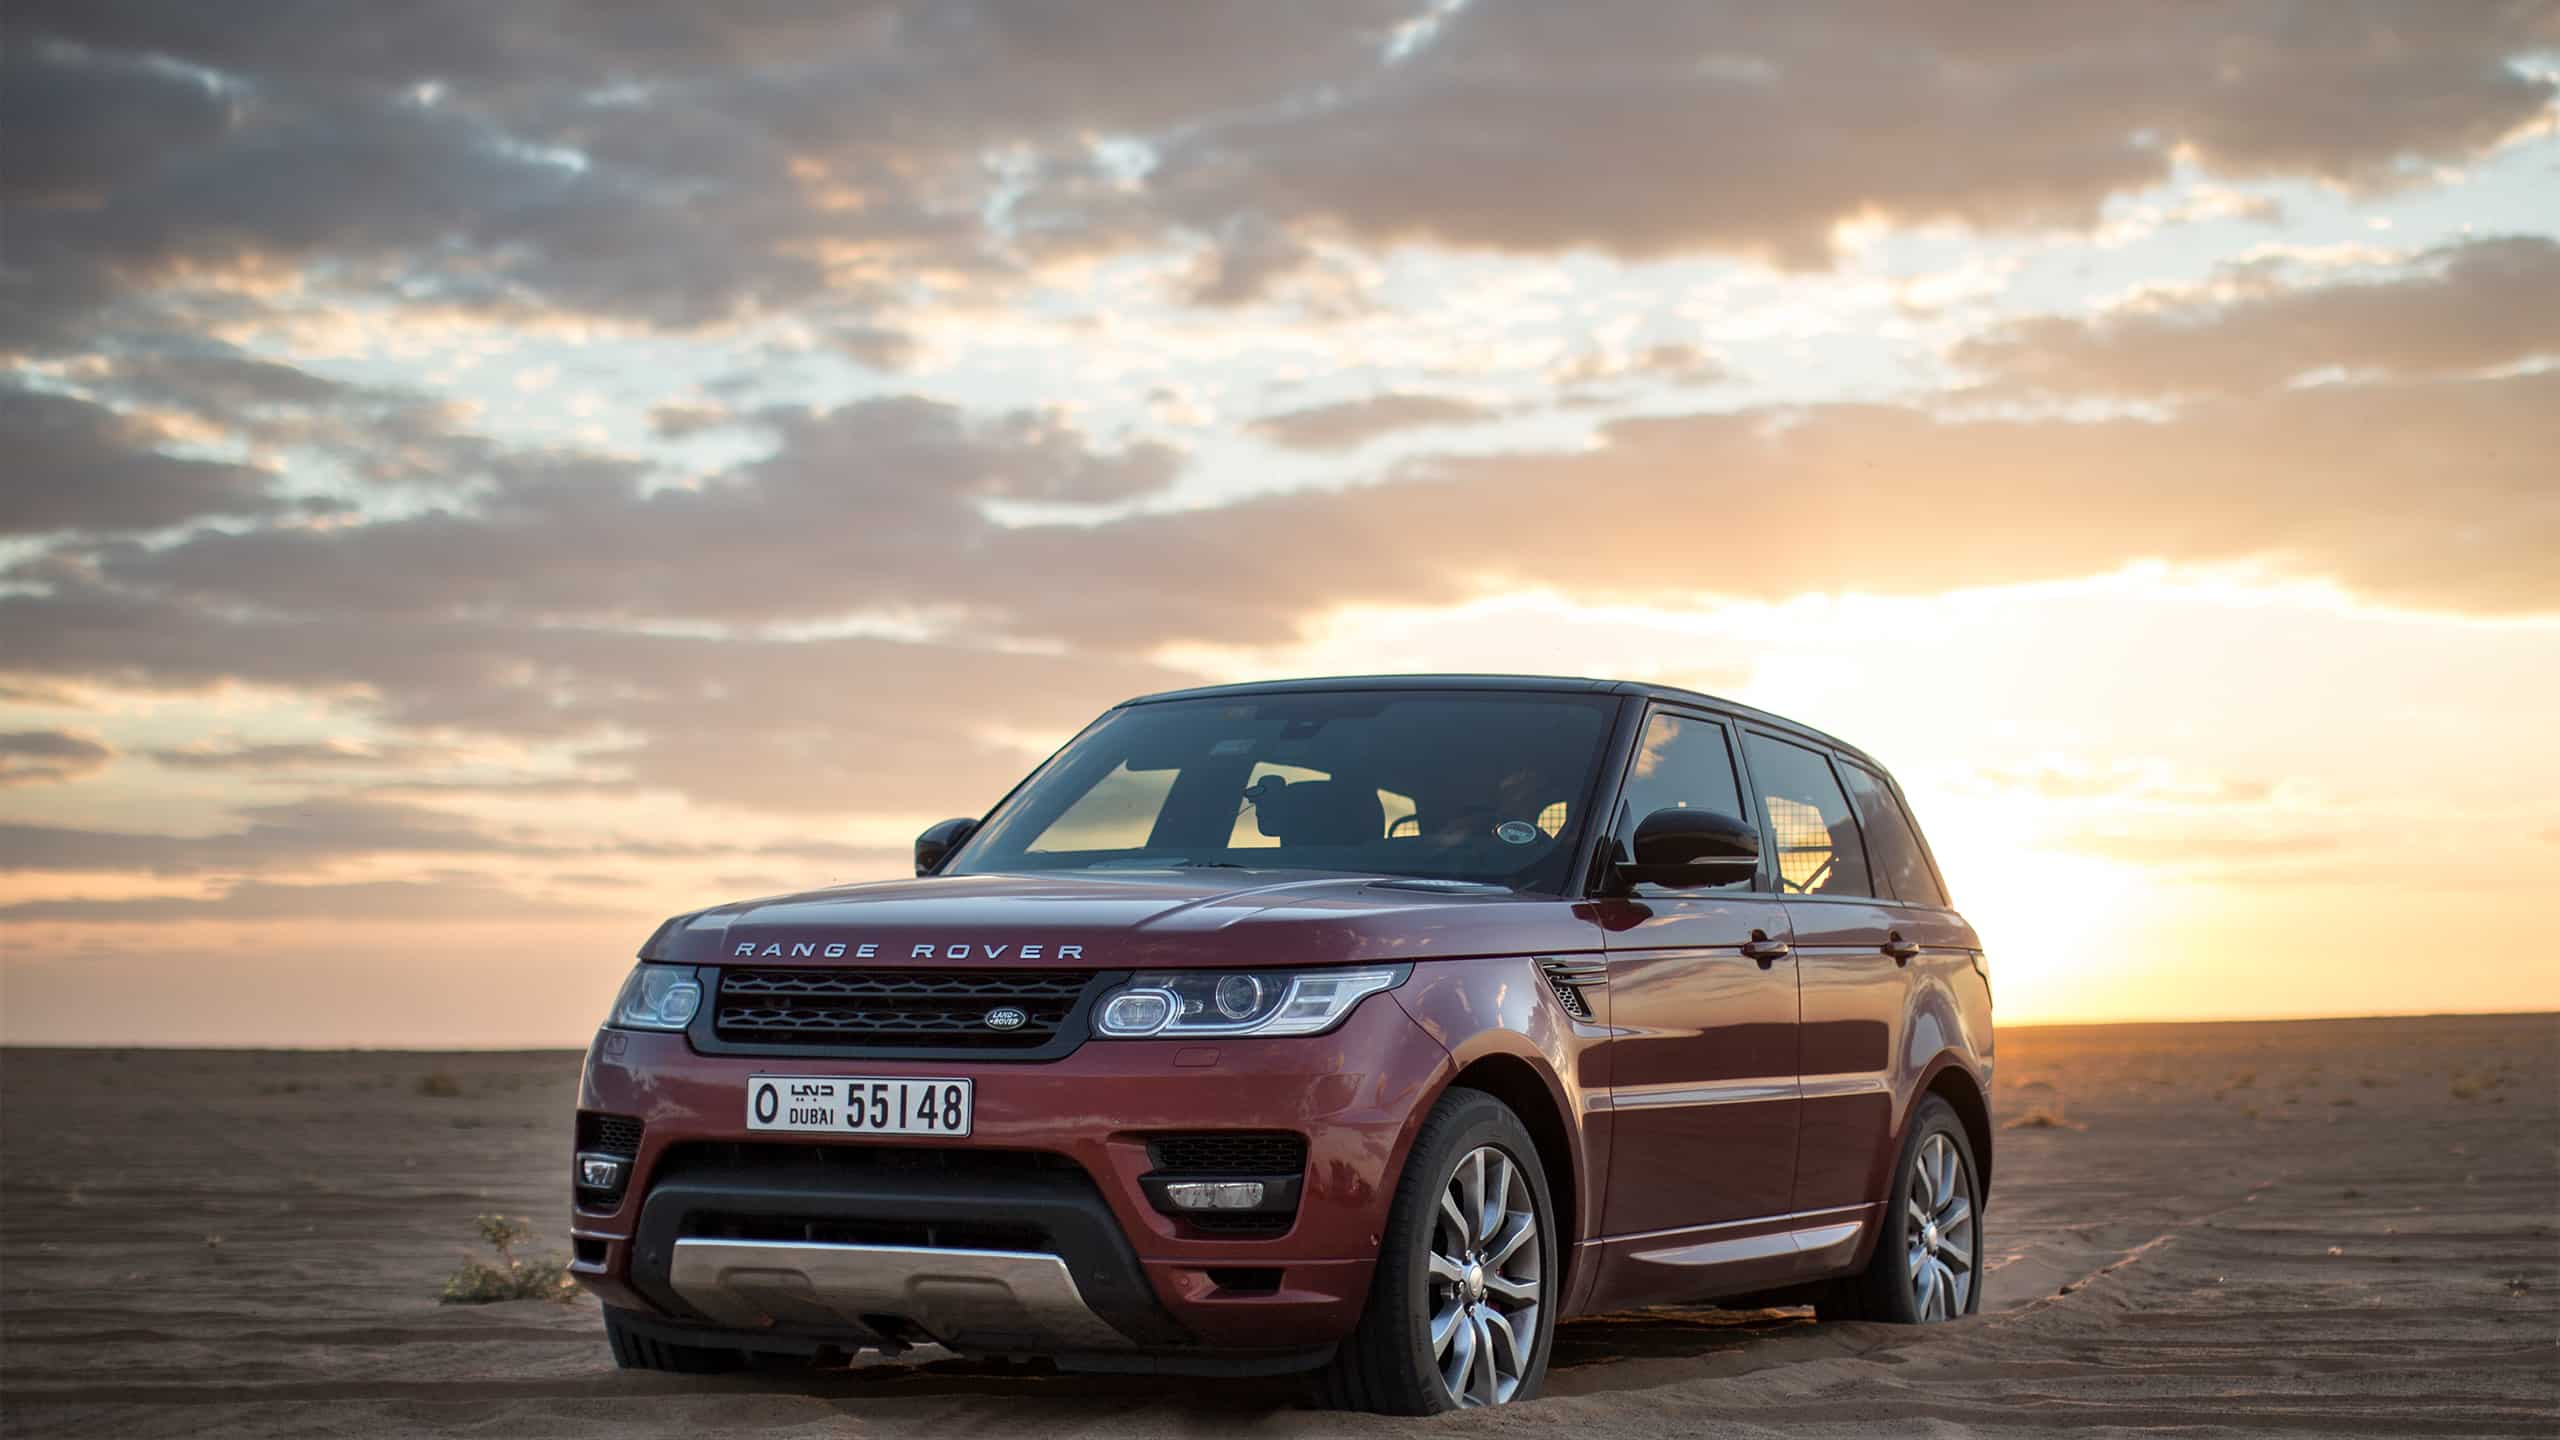 In 2013, the Land Rover Range Rover Sport galloped 800 kilometers across the Rub al-Khali Desert